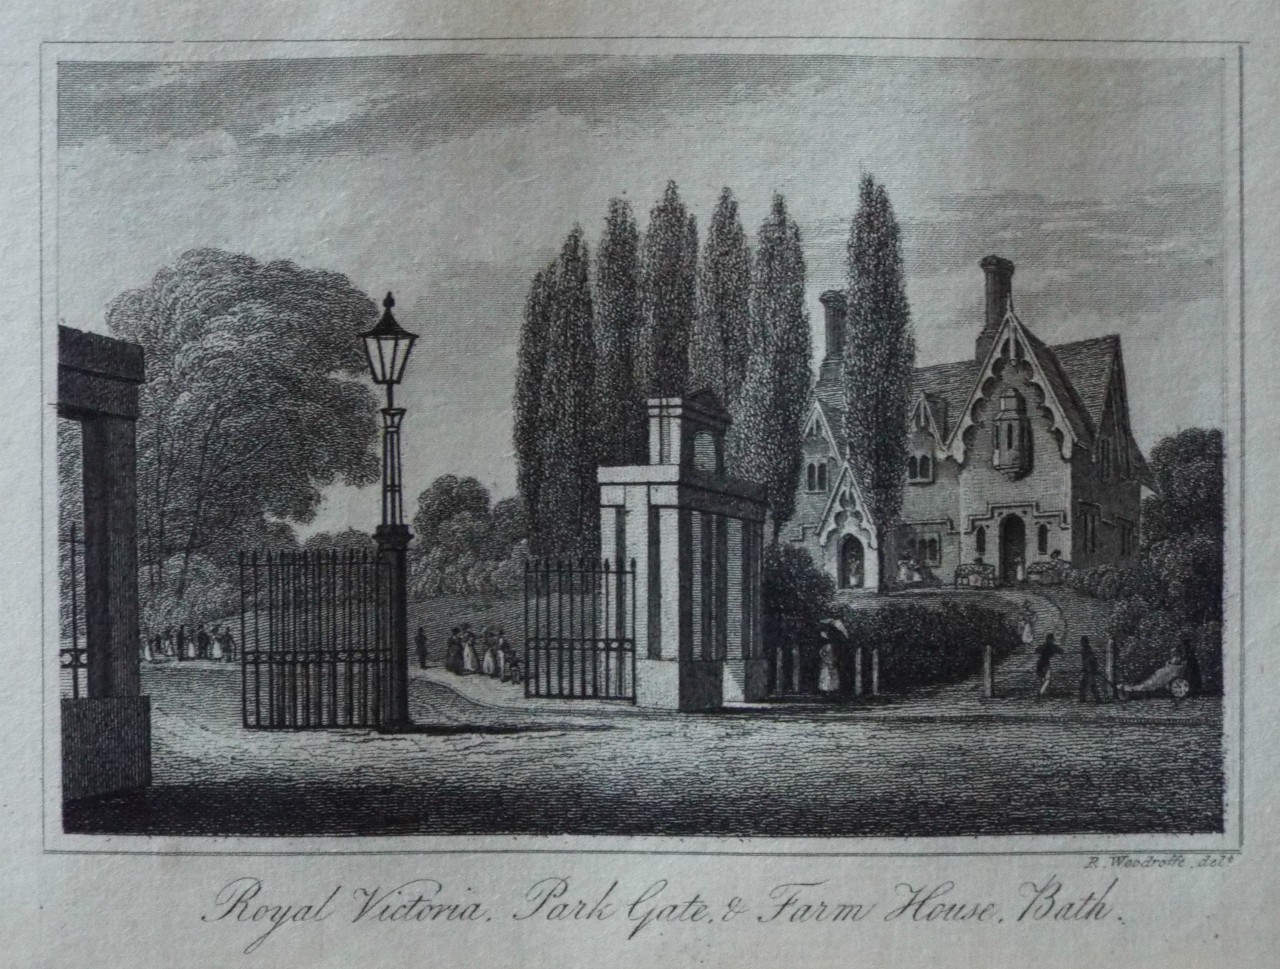 Print - Royal Victoria Park Gate & Farm House,  Bath